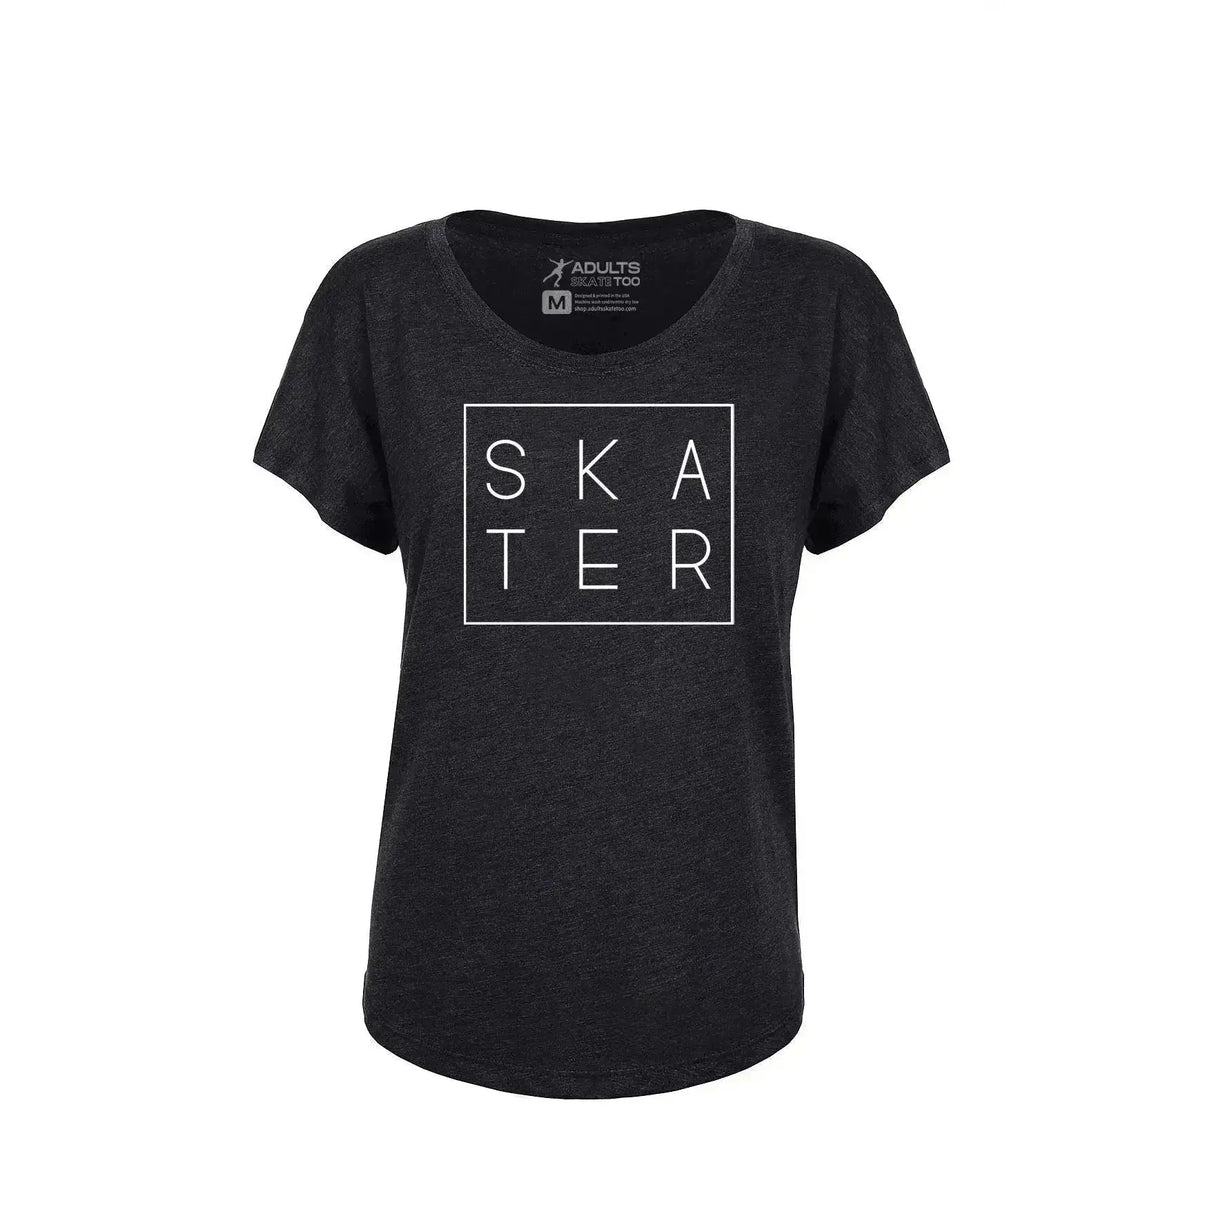 SKATER Women's Dolman Tee Adults Skate Too LLC